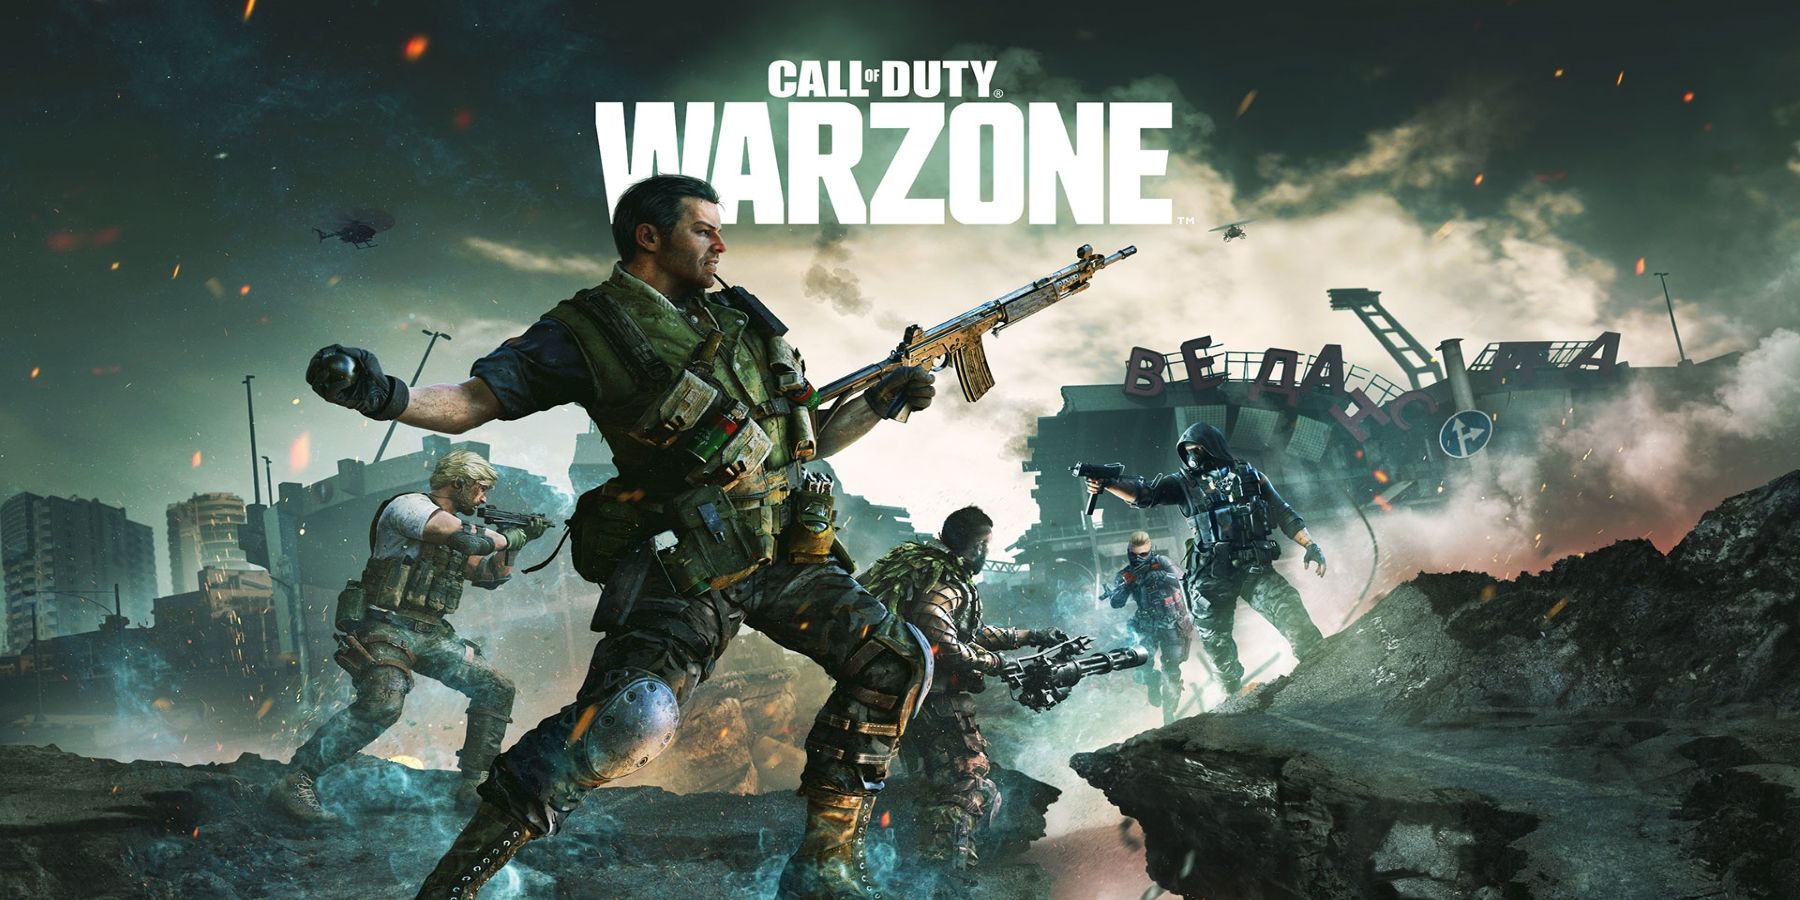 Call of Duty: Warzone trazendo de volta o Gulag original e adicionando casamatas da 2ª Guerra Mundial